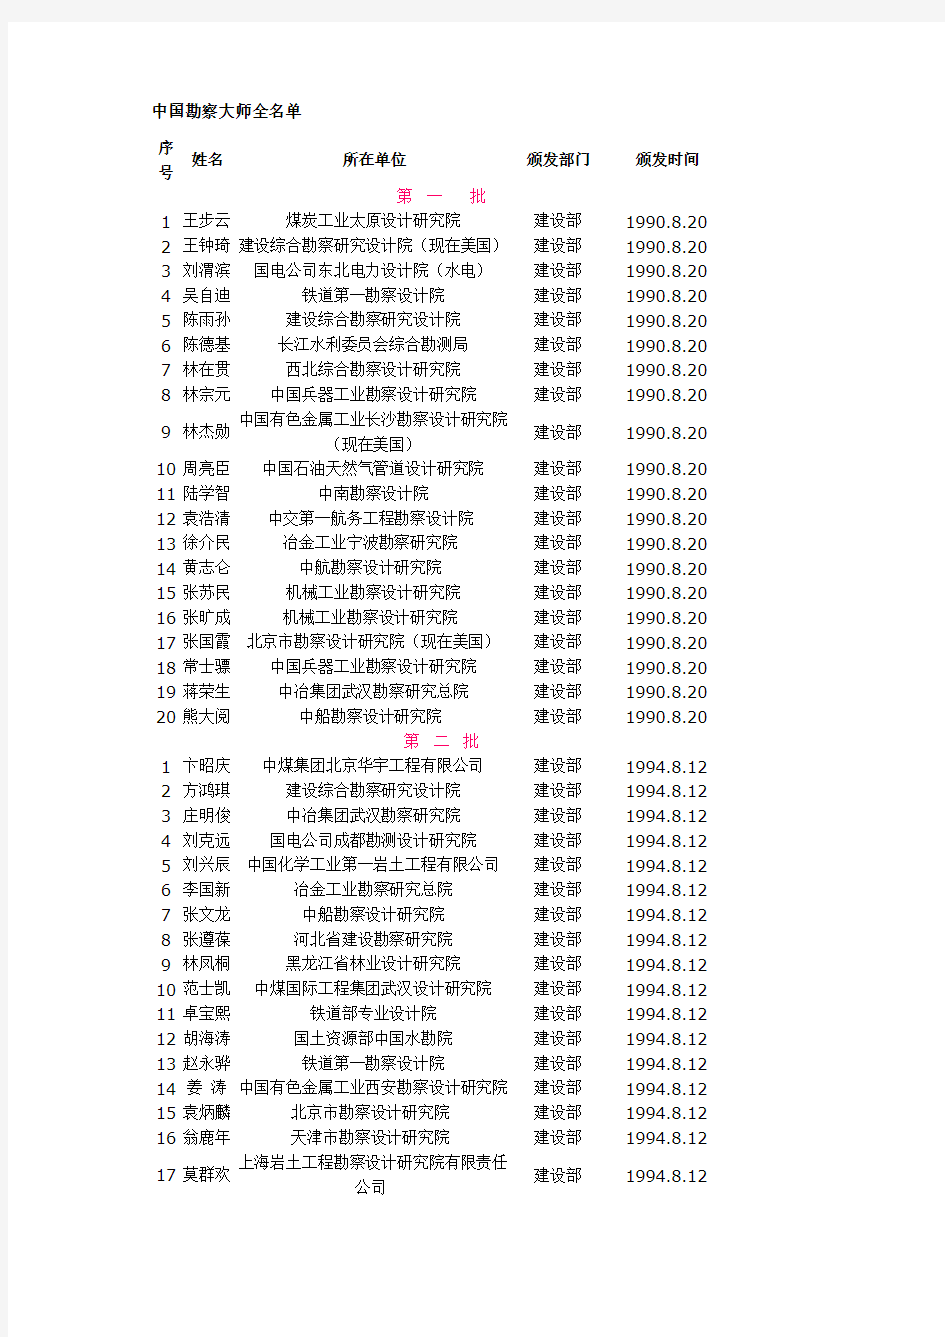 中国勘察大师全名单